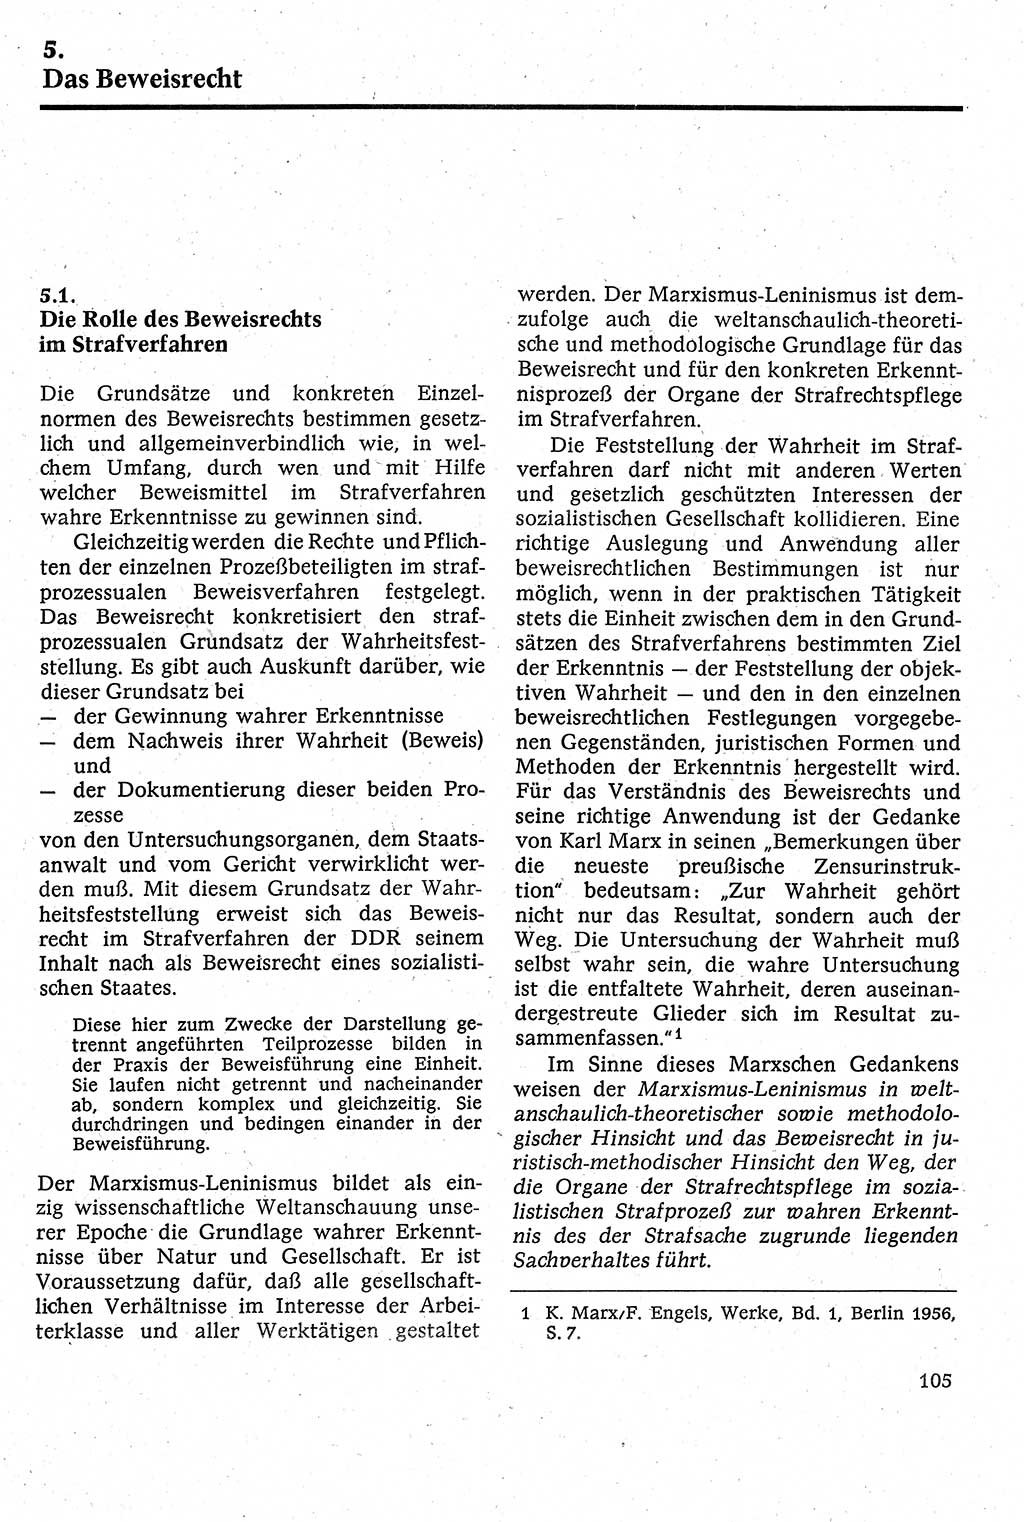 Strafverfahrensrecht [Deutsche Demokratische Republik (DDR)], Lehrbuch 1982, Seite 105 (Strafverf.-R. DDR Lb. 1982, S. 105)